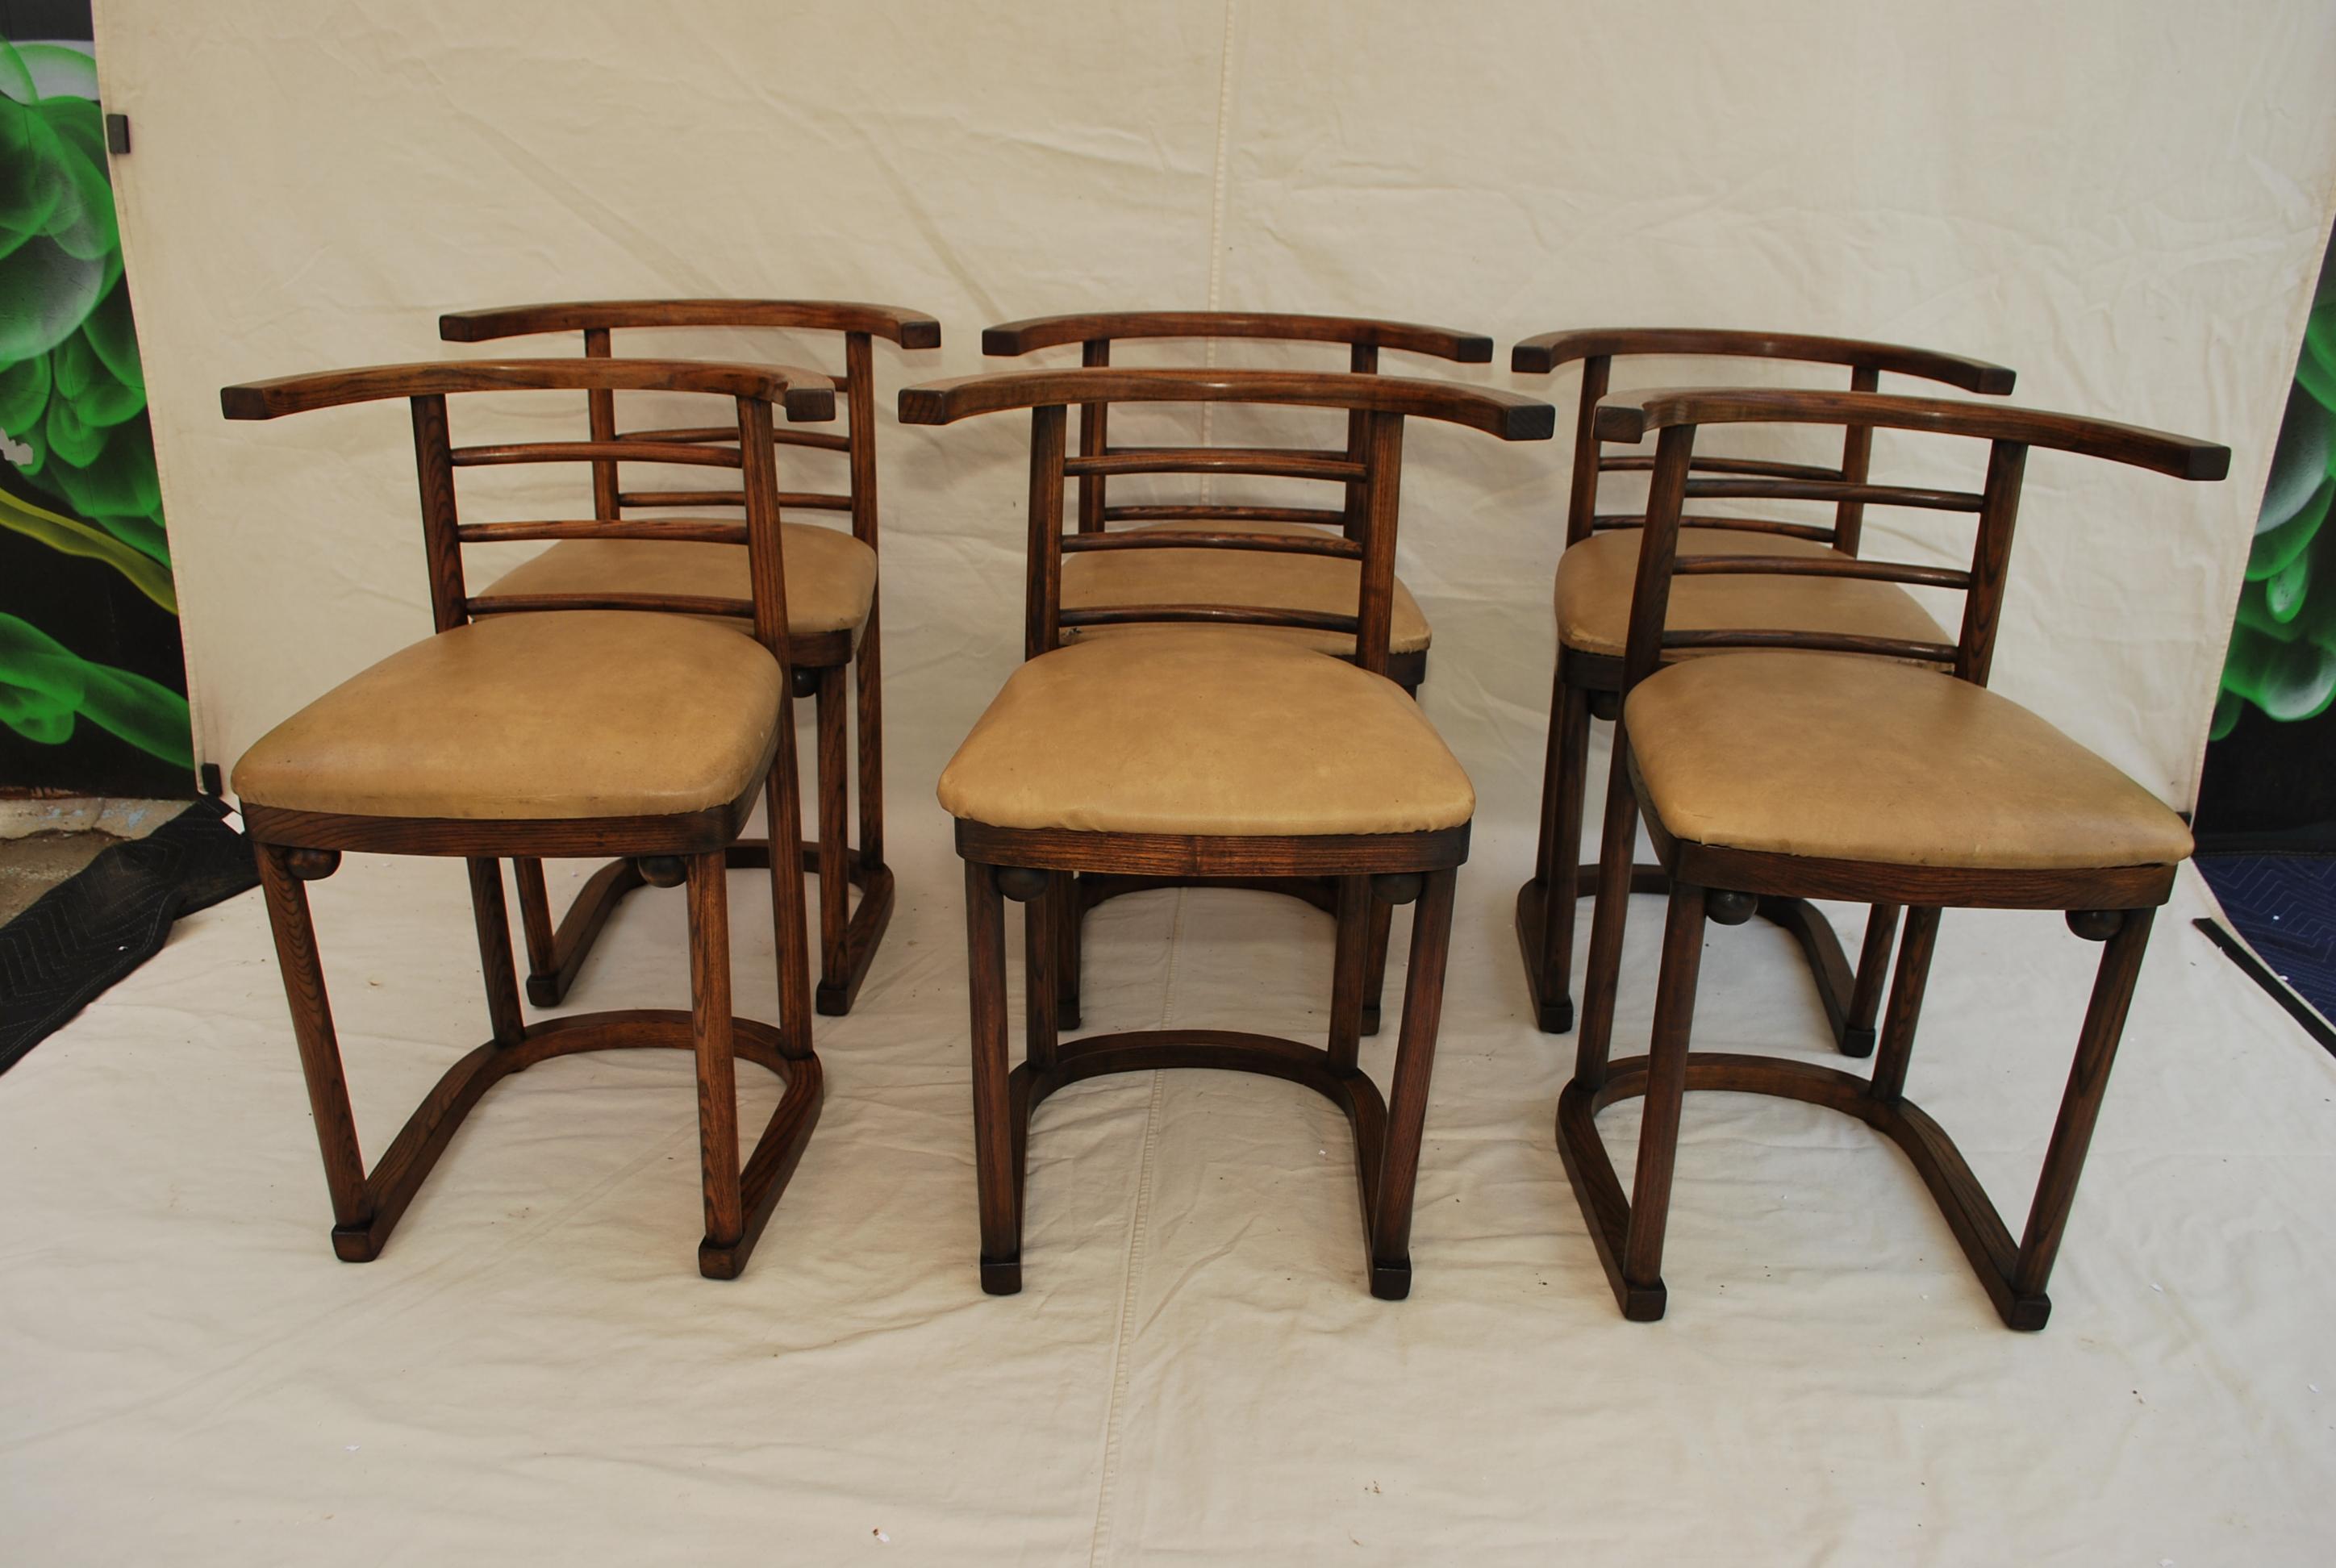 Un magnifique ensemble de six chaises de cabaret des années 1940 conçues par Josef Hoffmann, pour toanet, en bois de chêne, la patine est beaucoup plus belle en personne.